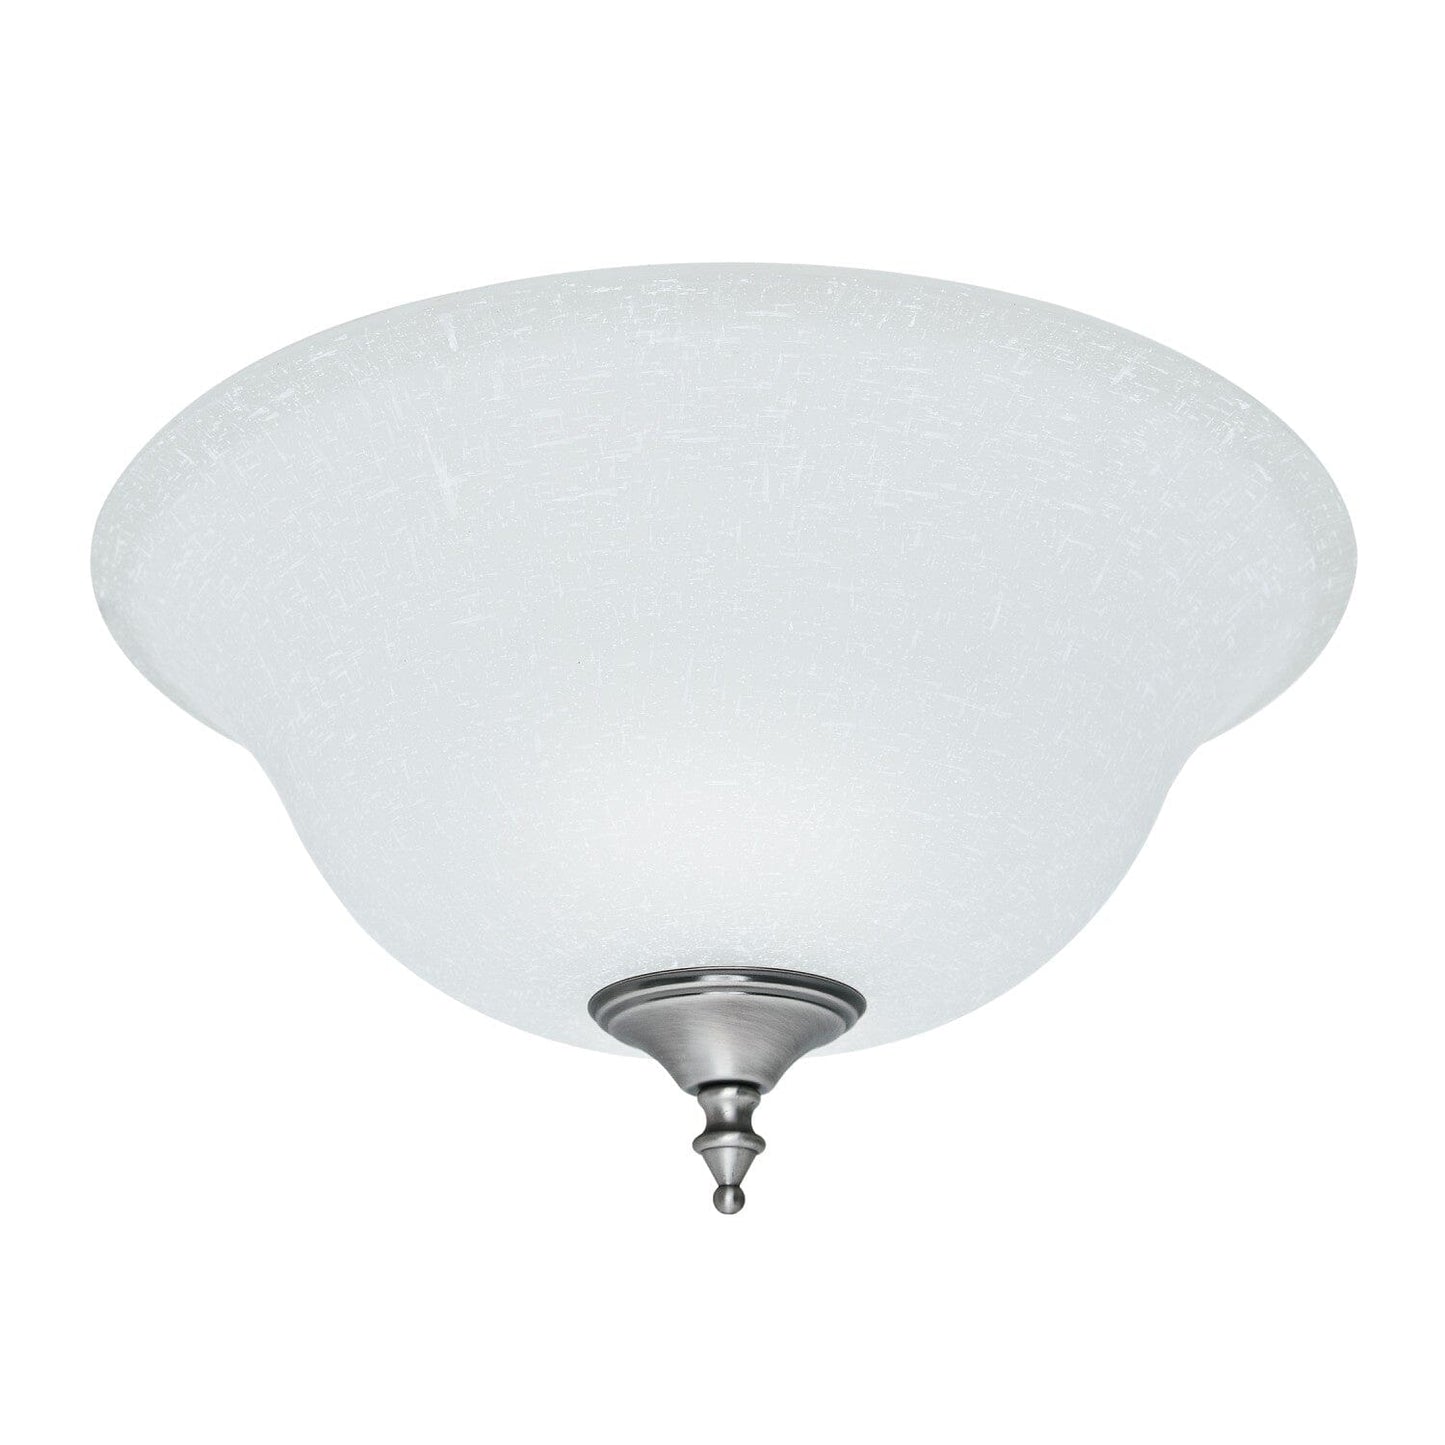 https://www.hunterfan.com/cdn/shop/files/white-linen-glass-bowl-99162-ceiling-fan-accessories-hunter-antique-pewternew.jpg?v=1704277348&width=1445